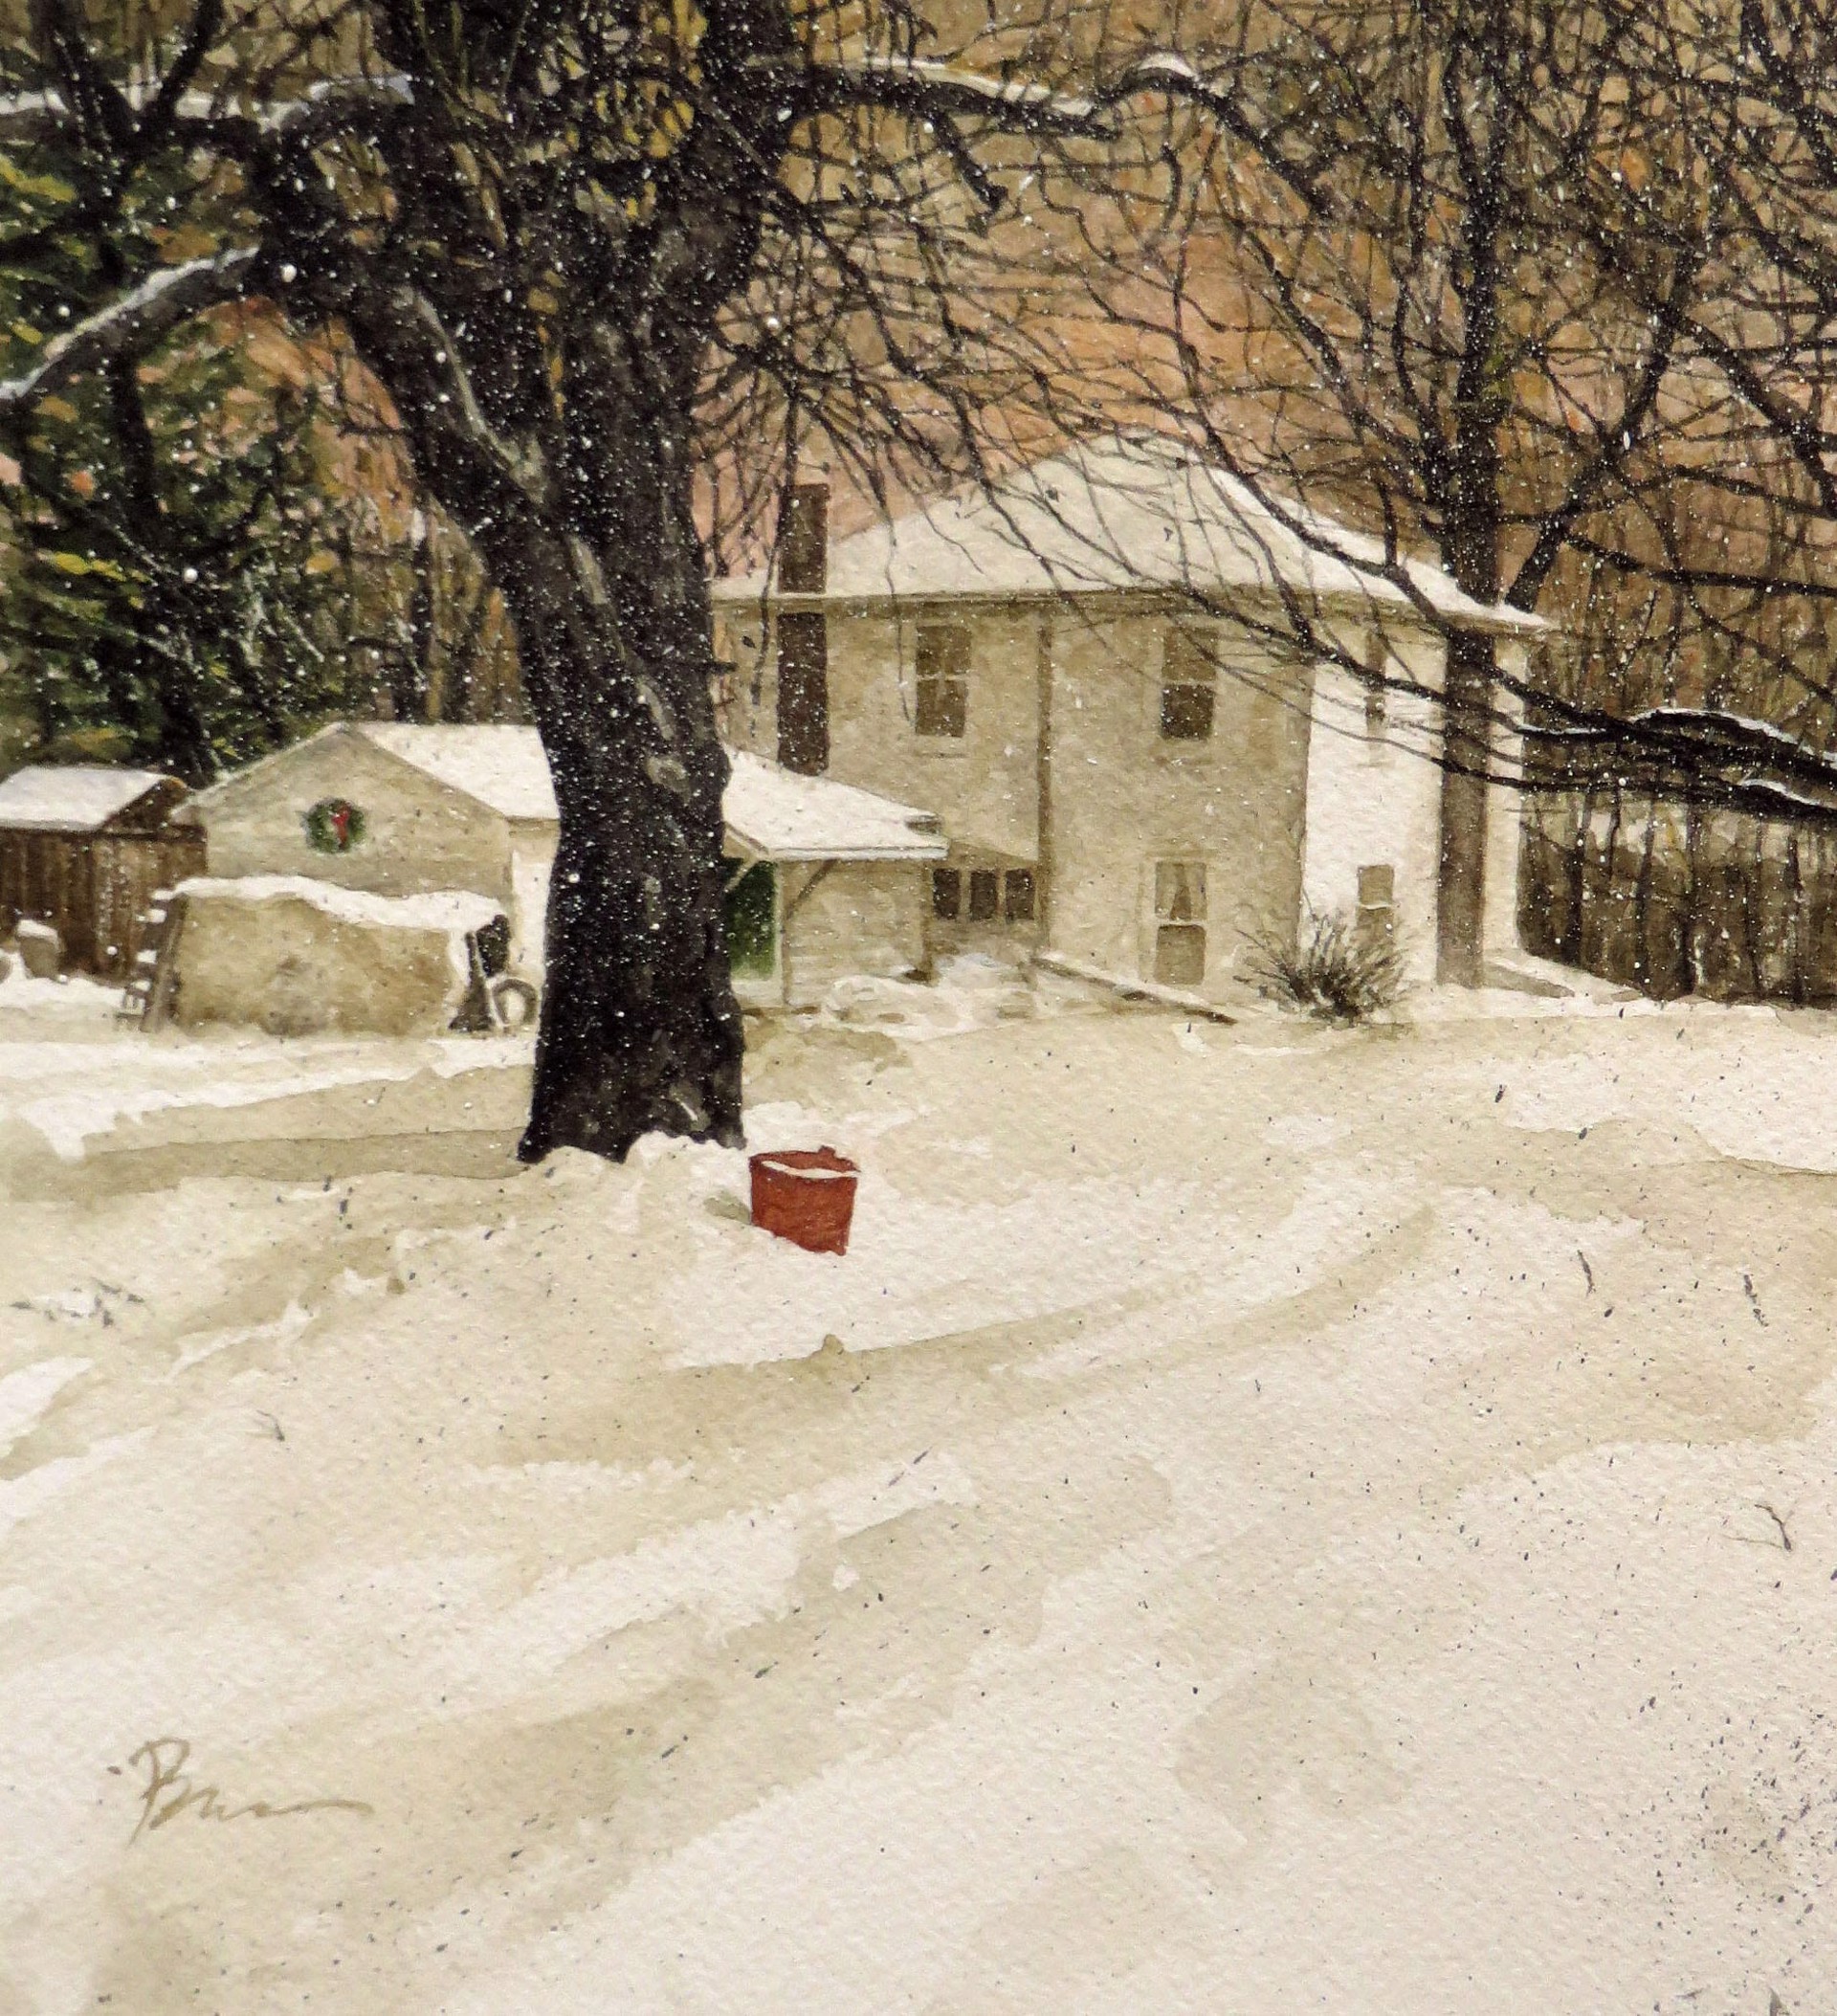 Honeoye House In Winter by Dan Brown